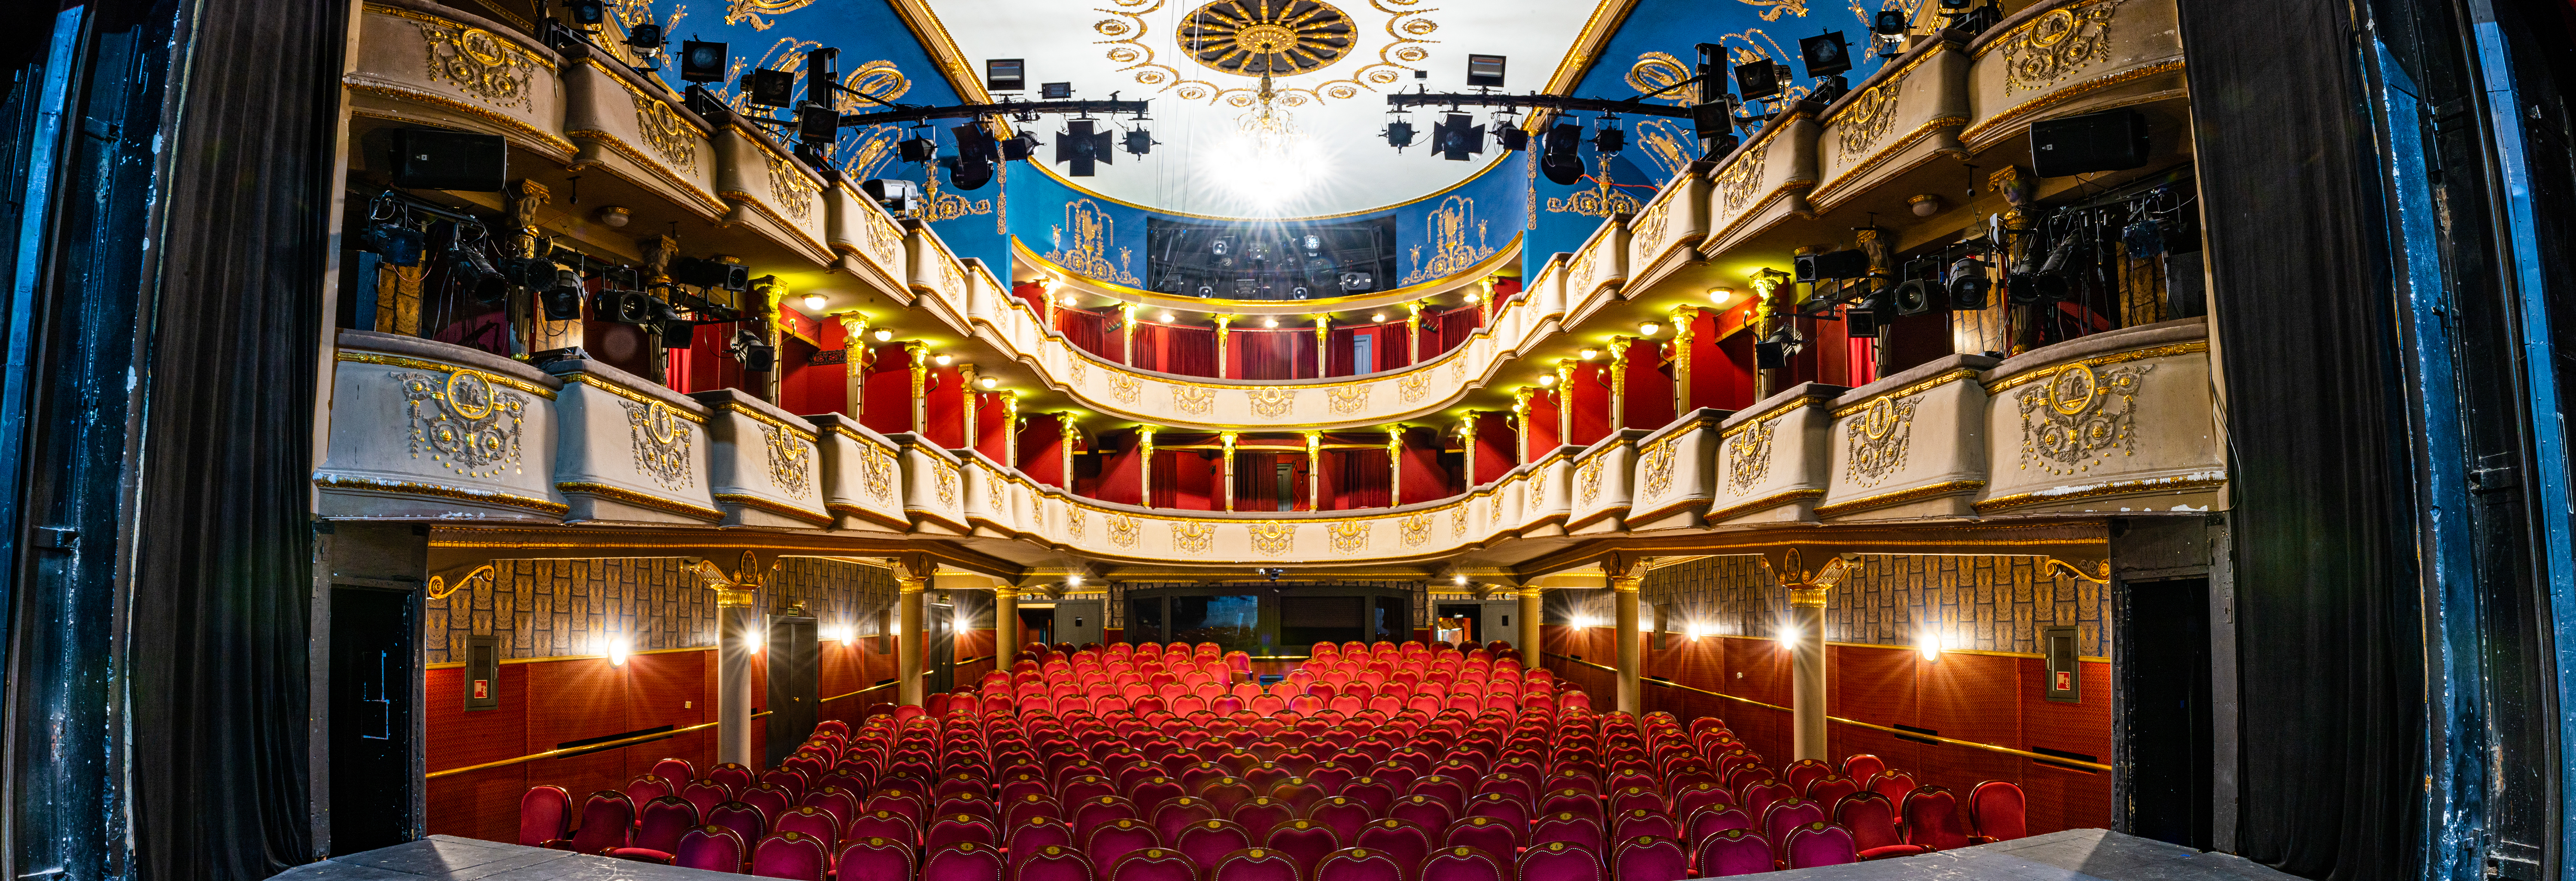 Felismered a budapesti színházakat a nézőterük alapján? 